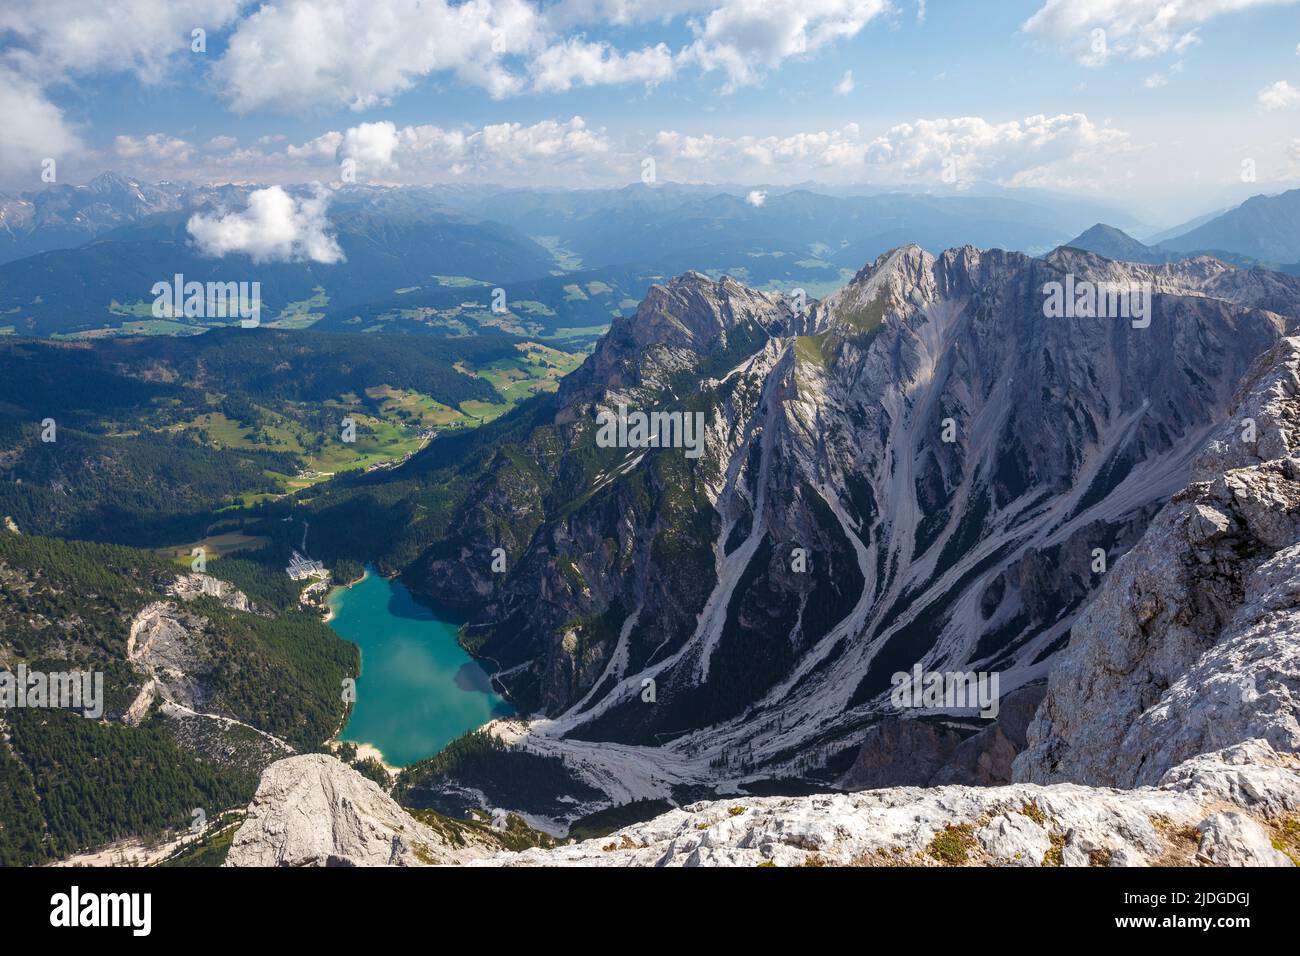 Vista sobre el lago Braies desde la cima de la montaña Croda del Becco. Los Dolomitas. Alpes italianos. Europa. Foto de stock